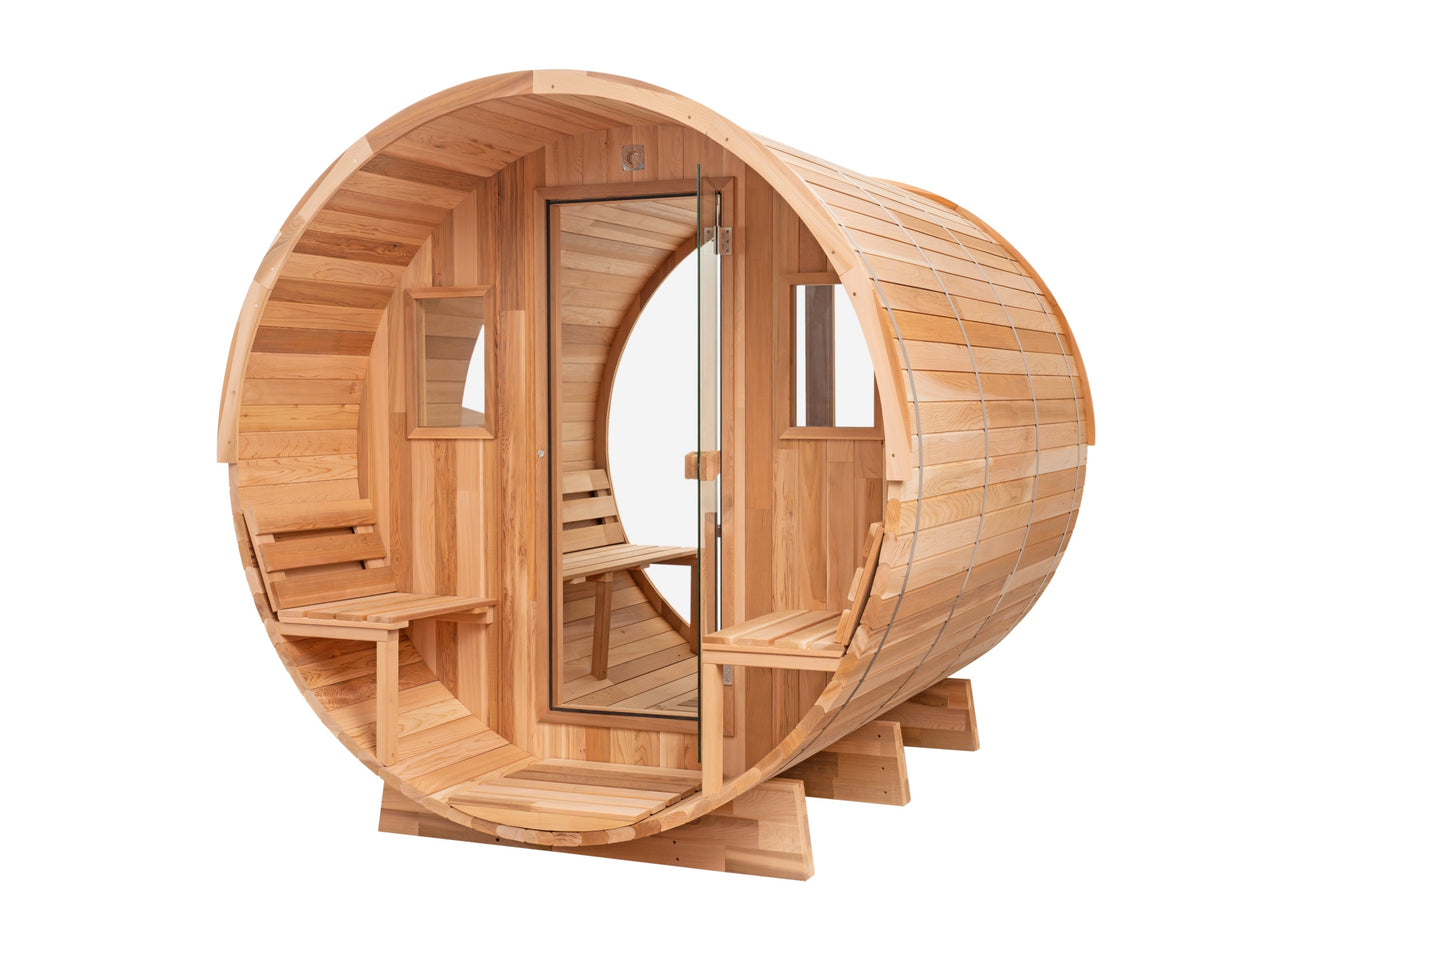 Cedar Sauna with Scenic View Porch XL - 6-8 Person